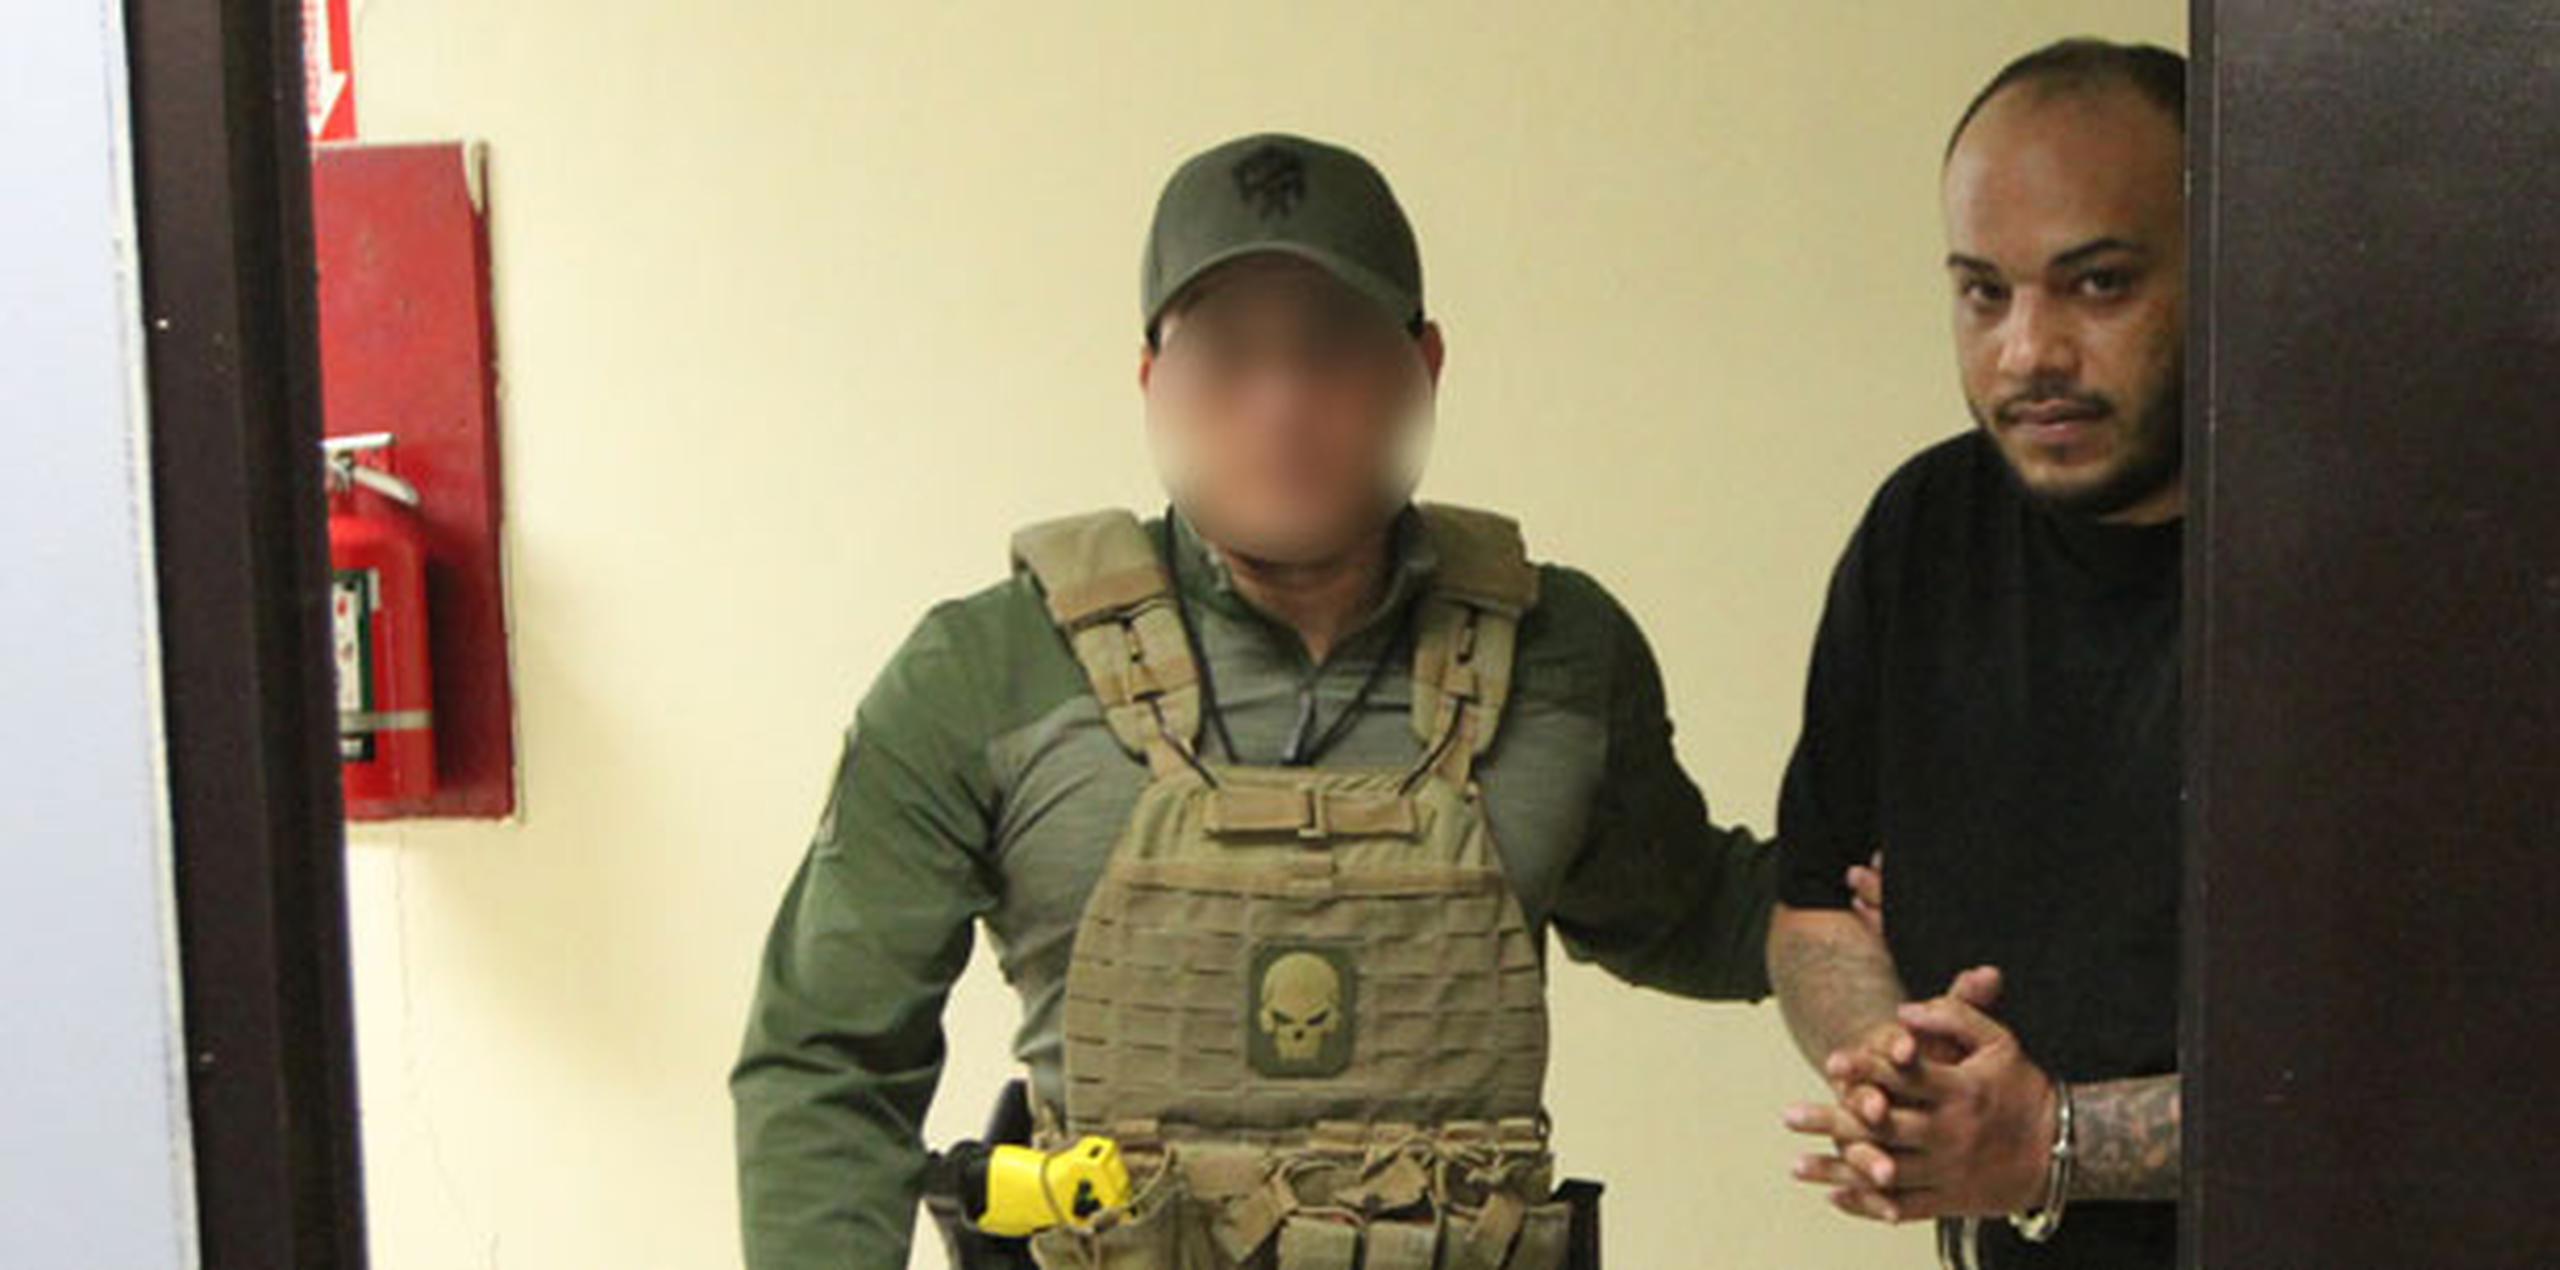 El exfugitivo fue trasladado al Cuartel General de la Policía para ser procesado. (alex.figueroa@gfrmedia.com)